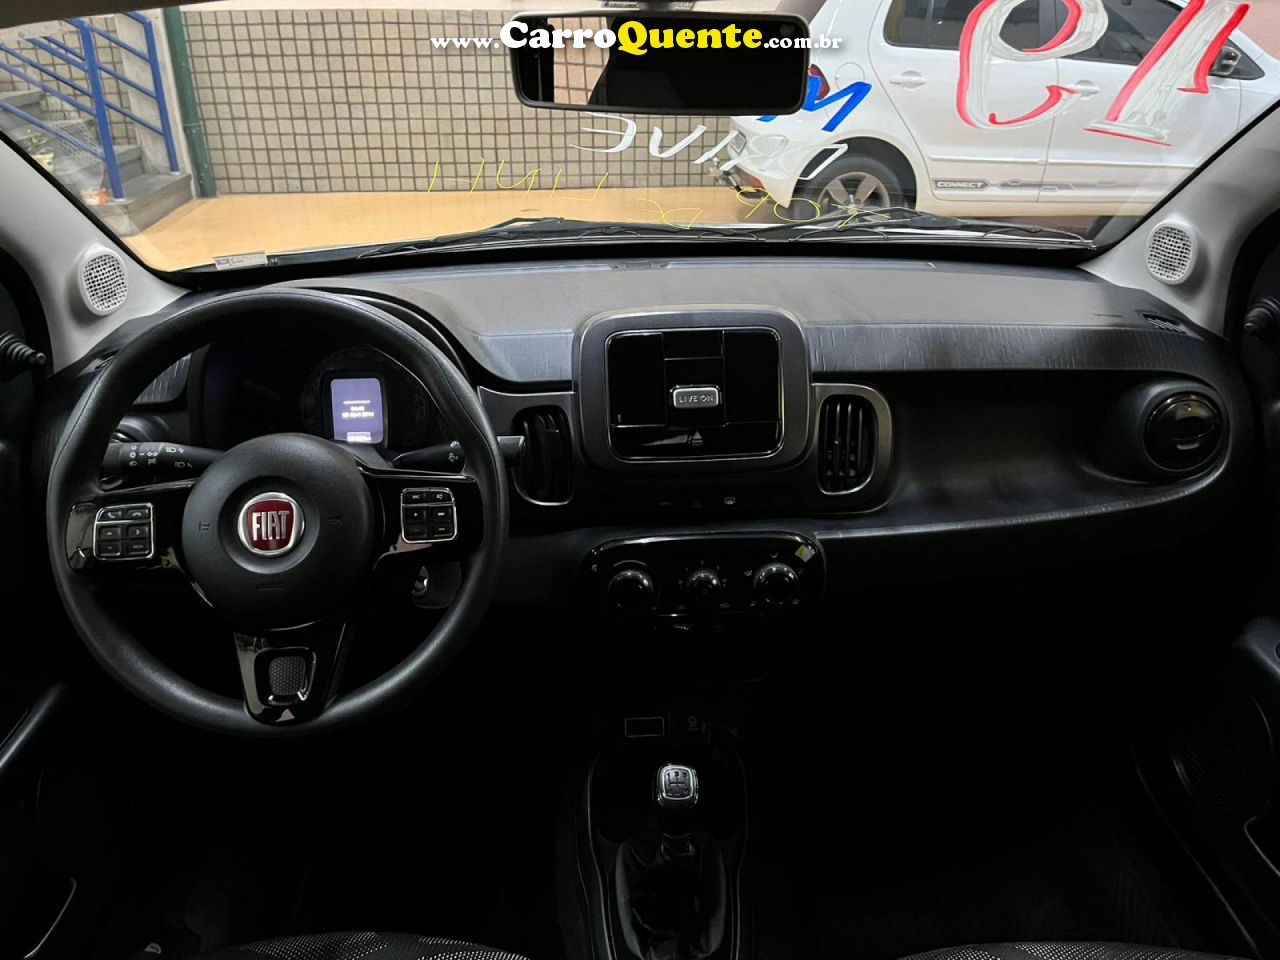 FIAT   MOBI DRIVE 1.0 FLEX 6V 5P   PRATA 2019 1.0 FLEX - Loja